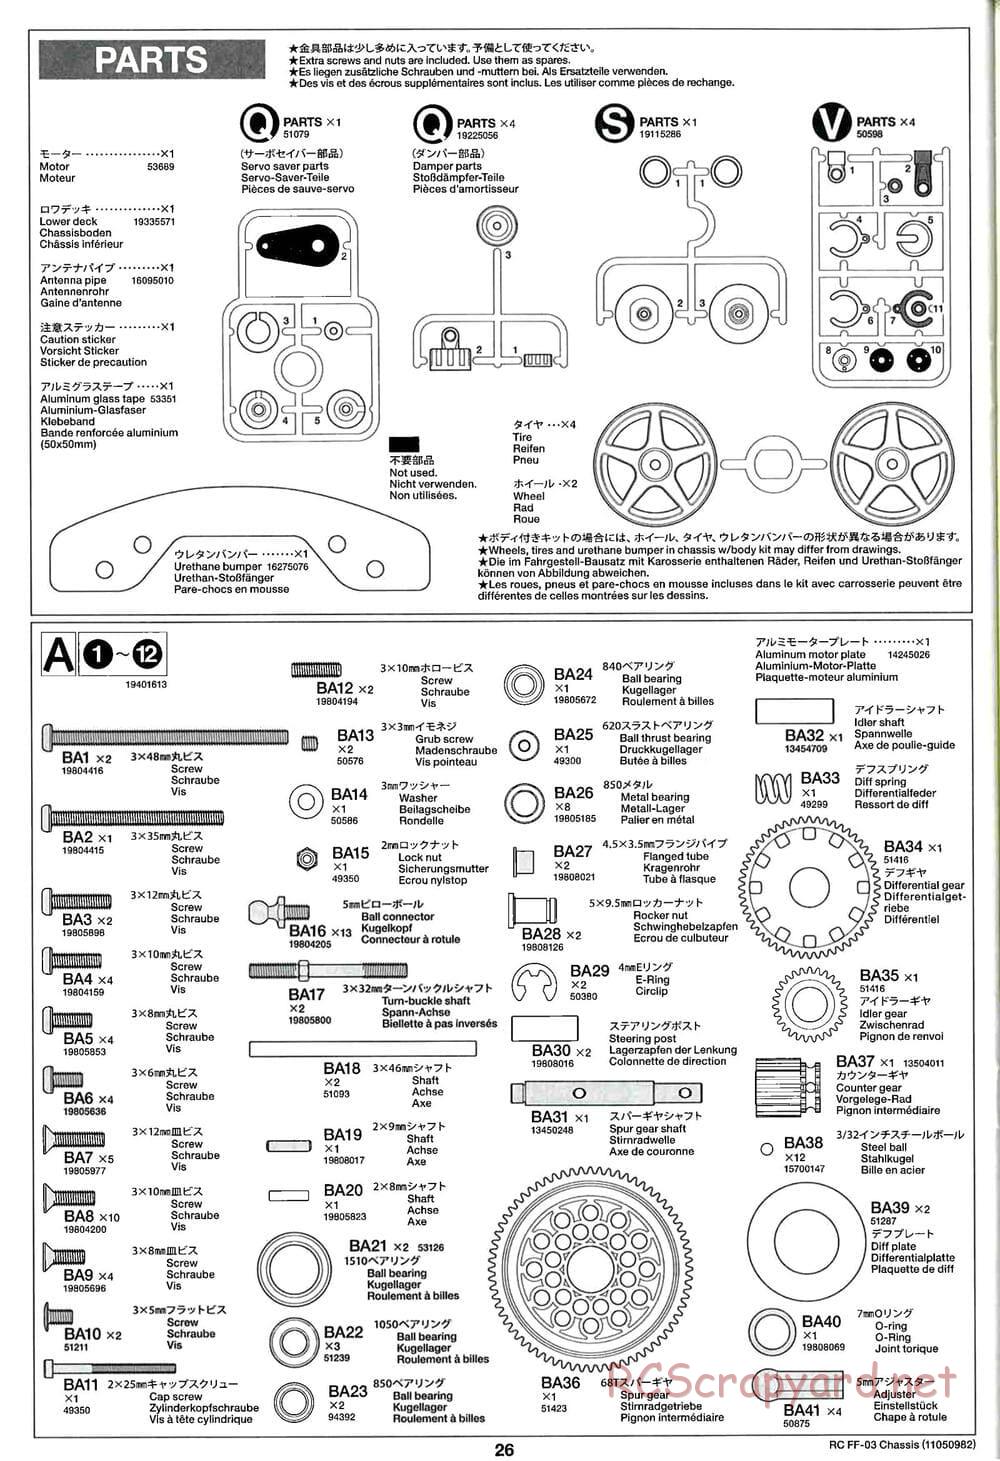 Tamiya - Castrol Honda Civic VTi - FF-03 Chassis - Manual - Page 26